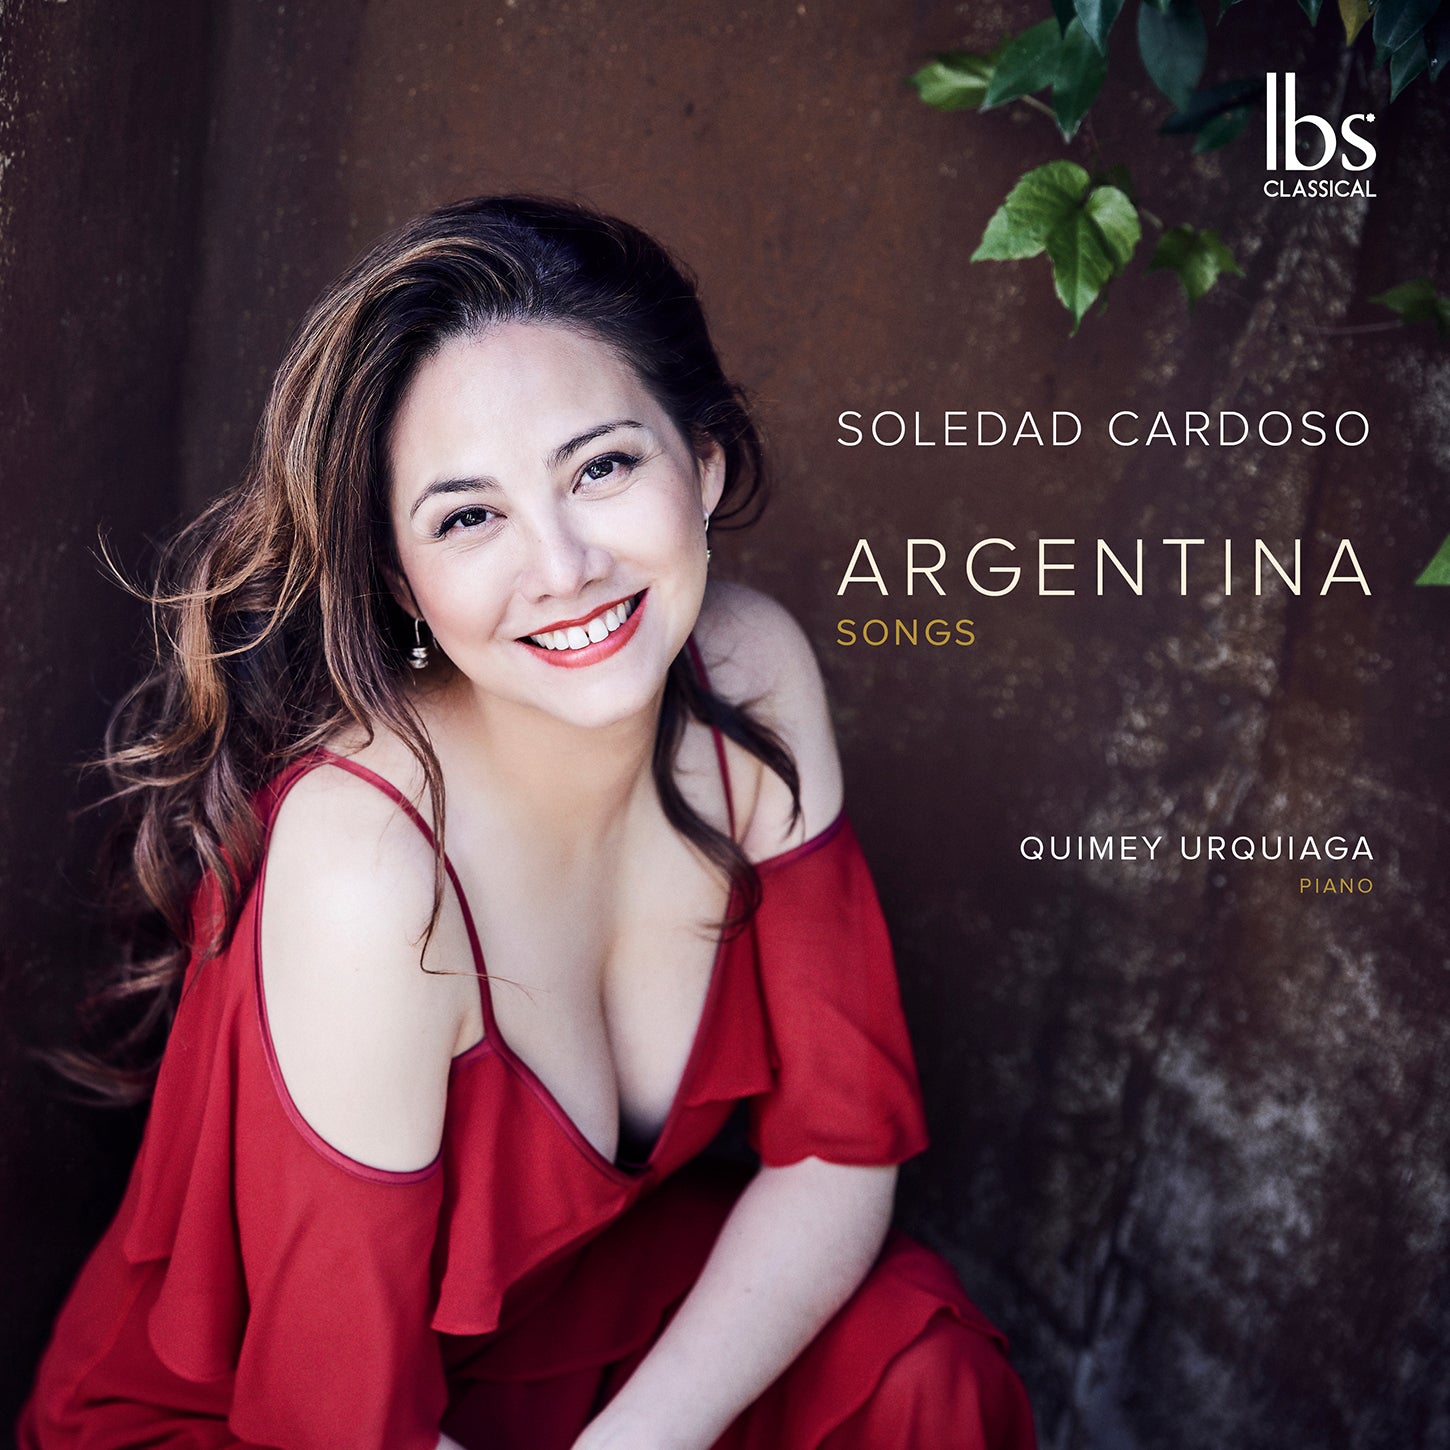 Argentina Songs / Soledad Cardoso